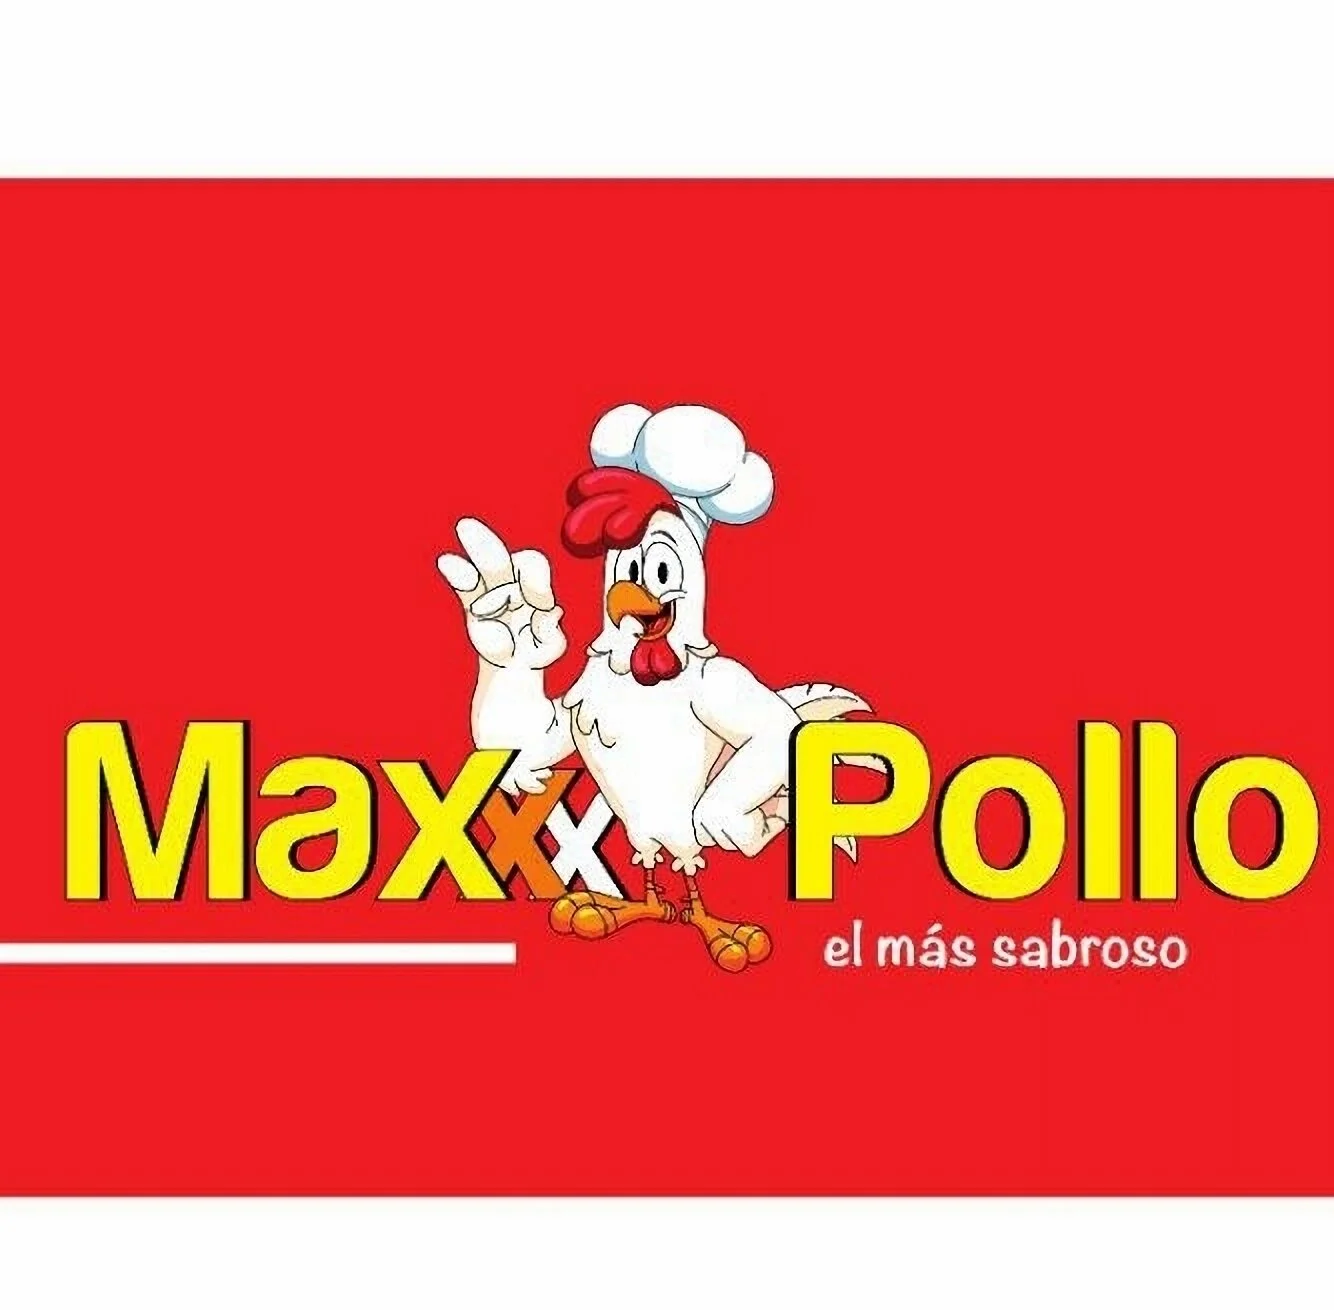 Restaurantes-maxx-pollo-18921